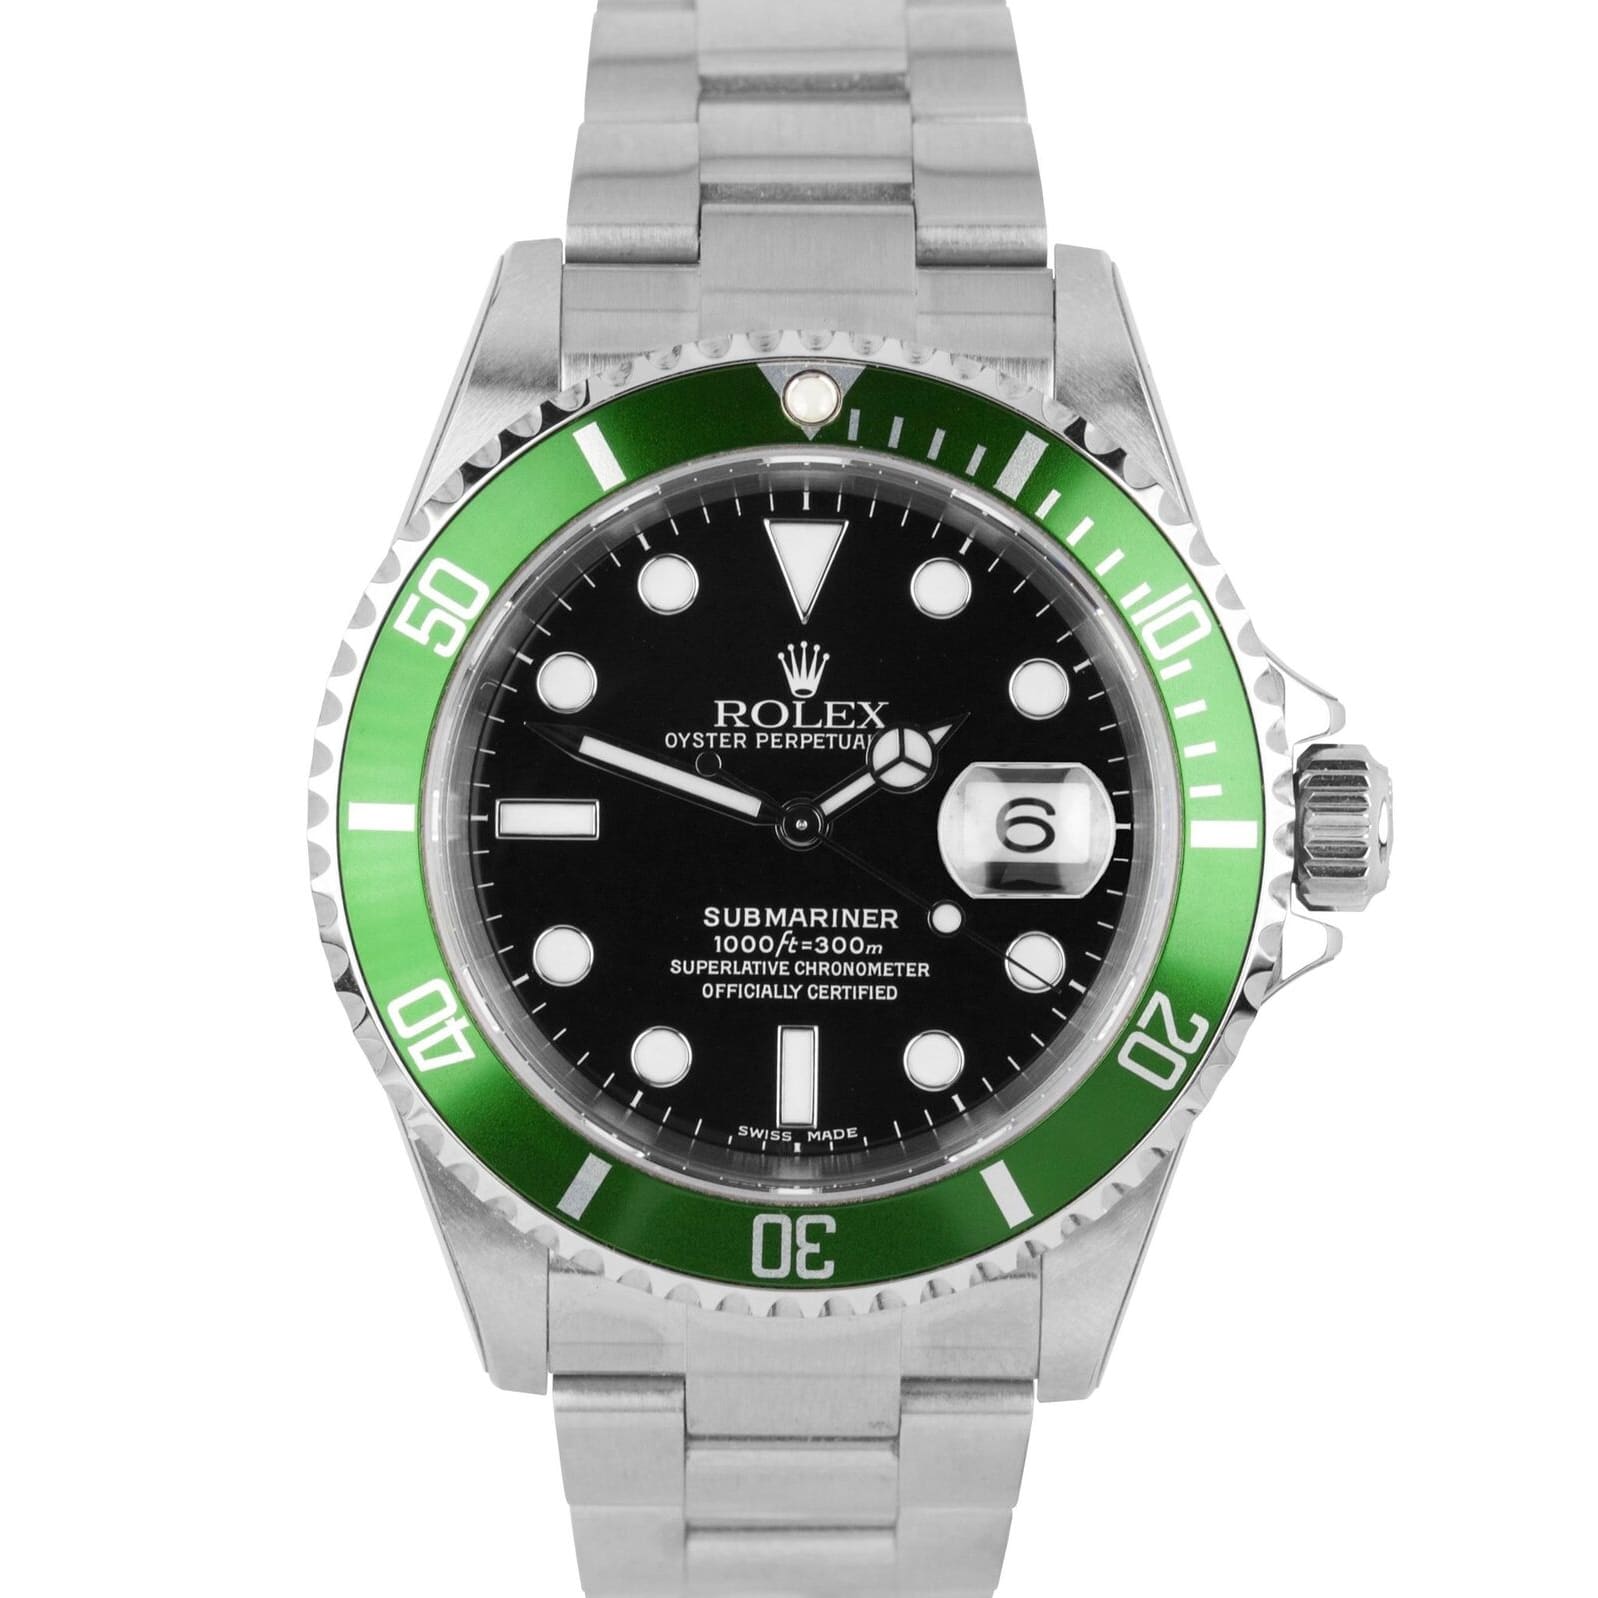 Rolex 16610LV MK4 : Submariner Date 16610 LV Mark 4 » WatchBase